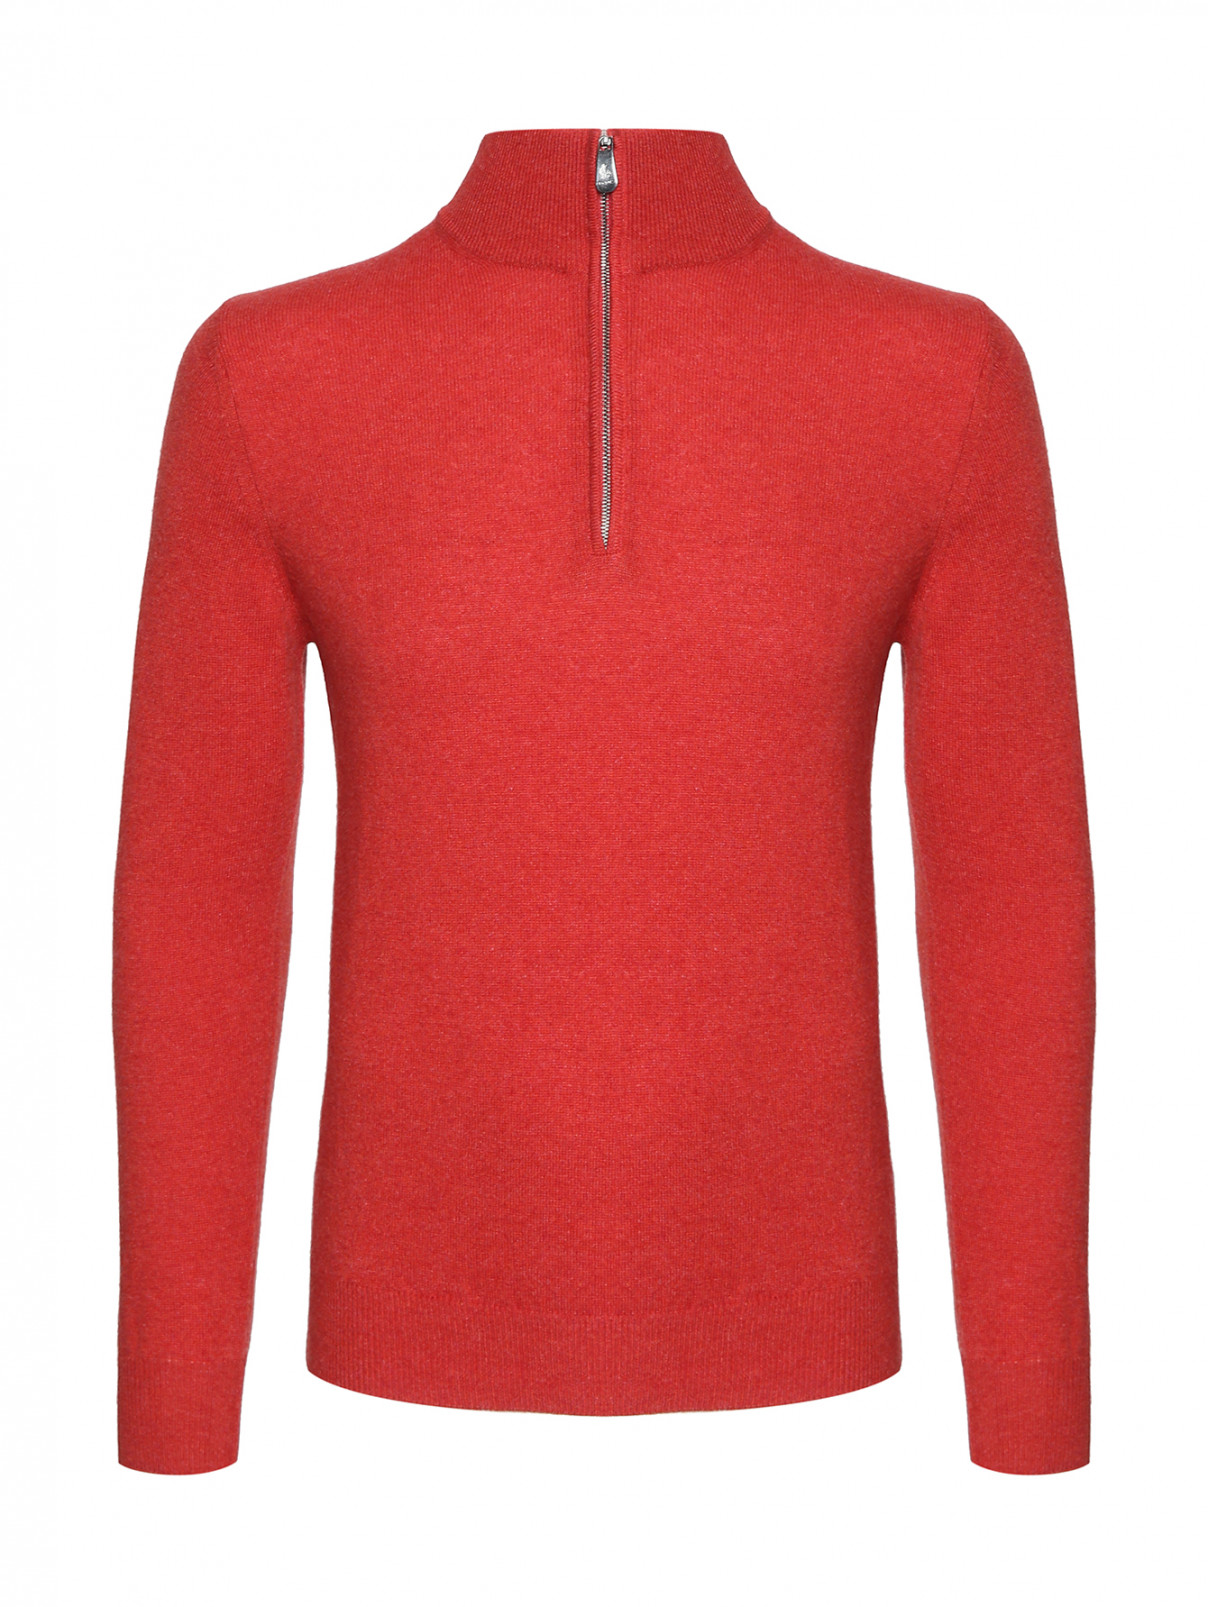 Джемпер из кашемира на молнии Piacenza Cashmere  –  Общий вид  – Цвет:  Красный